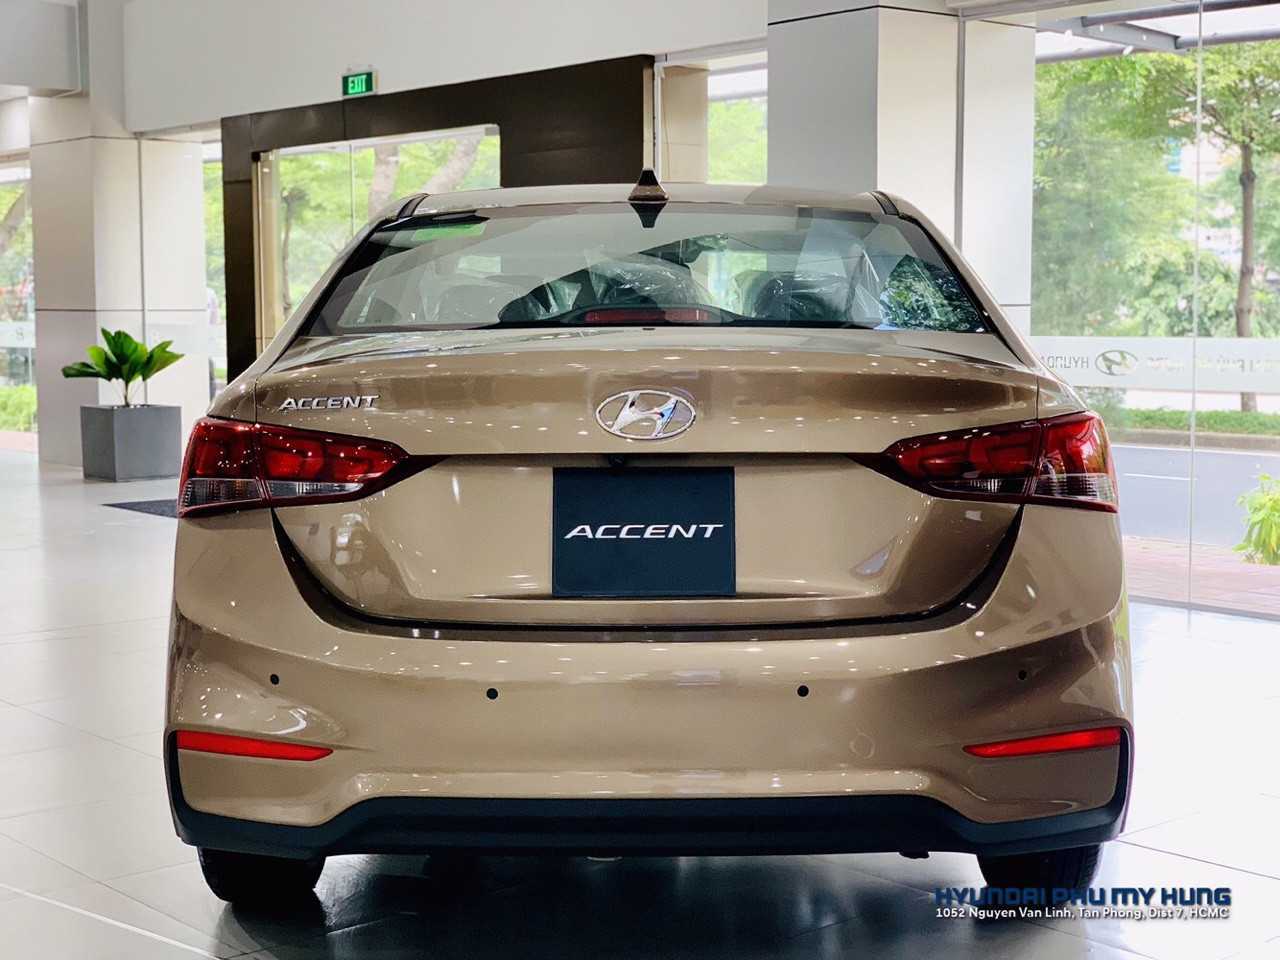 Hyundai Accent 2019 MT 1.4 Vàng Cát Ảnh Chụp Thực Tế Tại Hyundai Quận 7